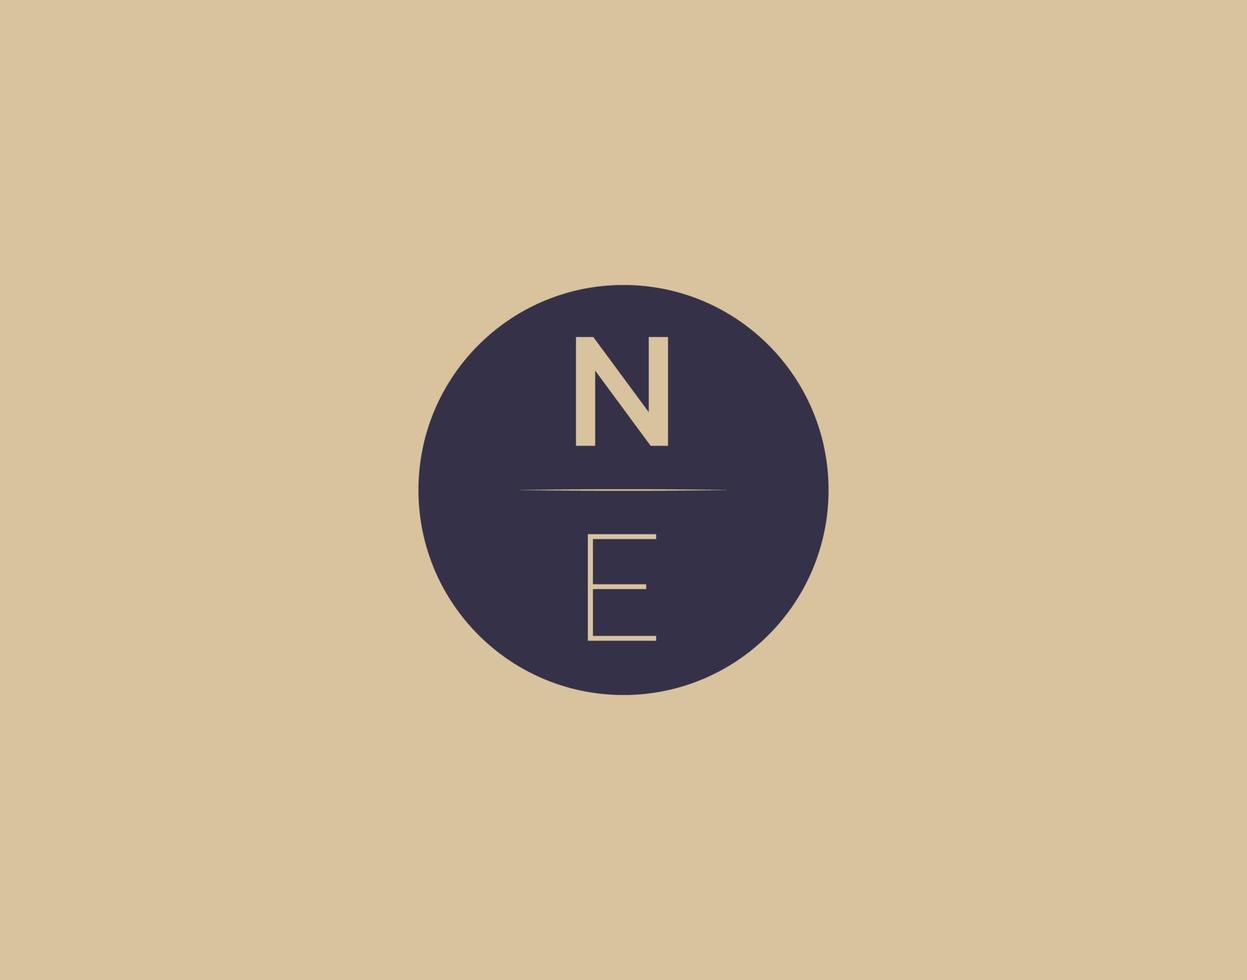 NE letter modern elegant logo design vector images